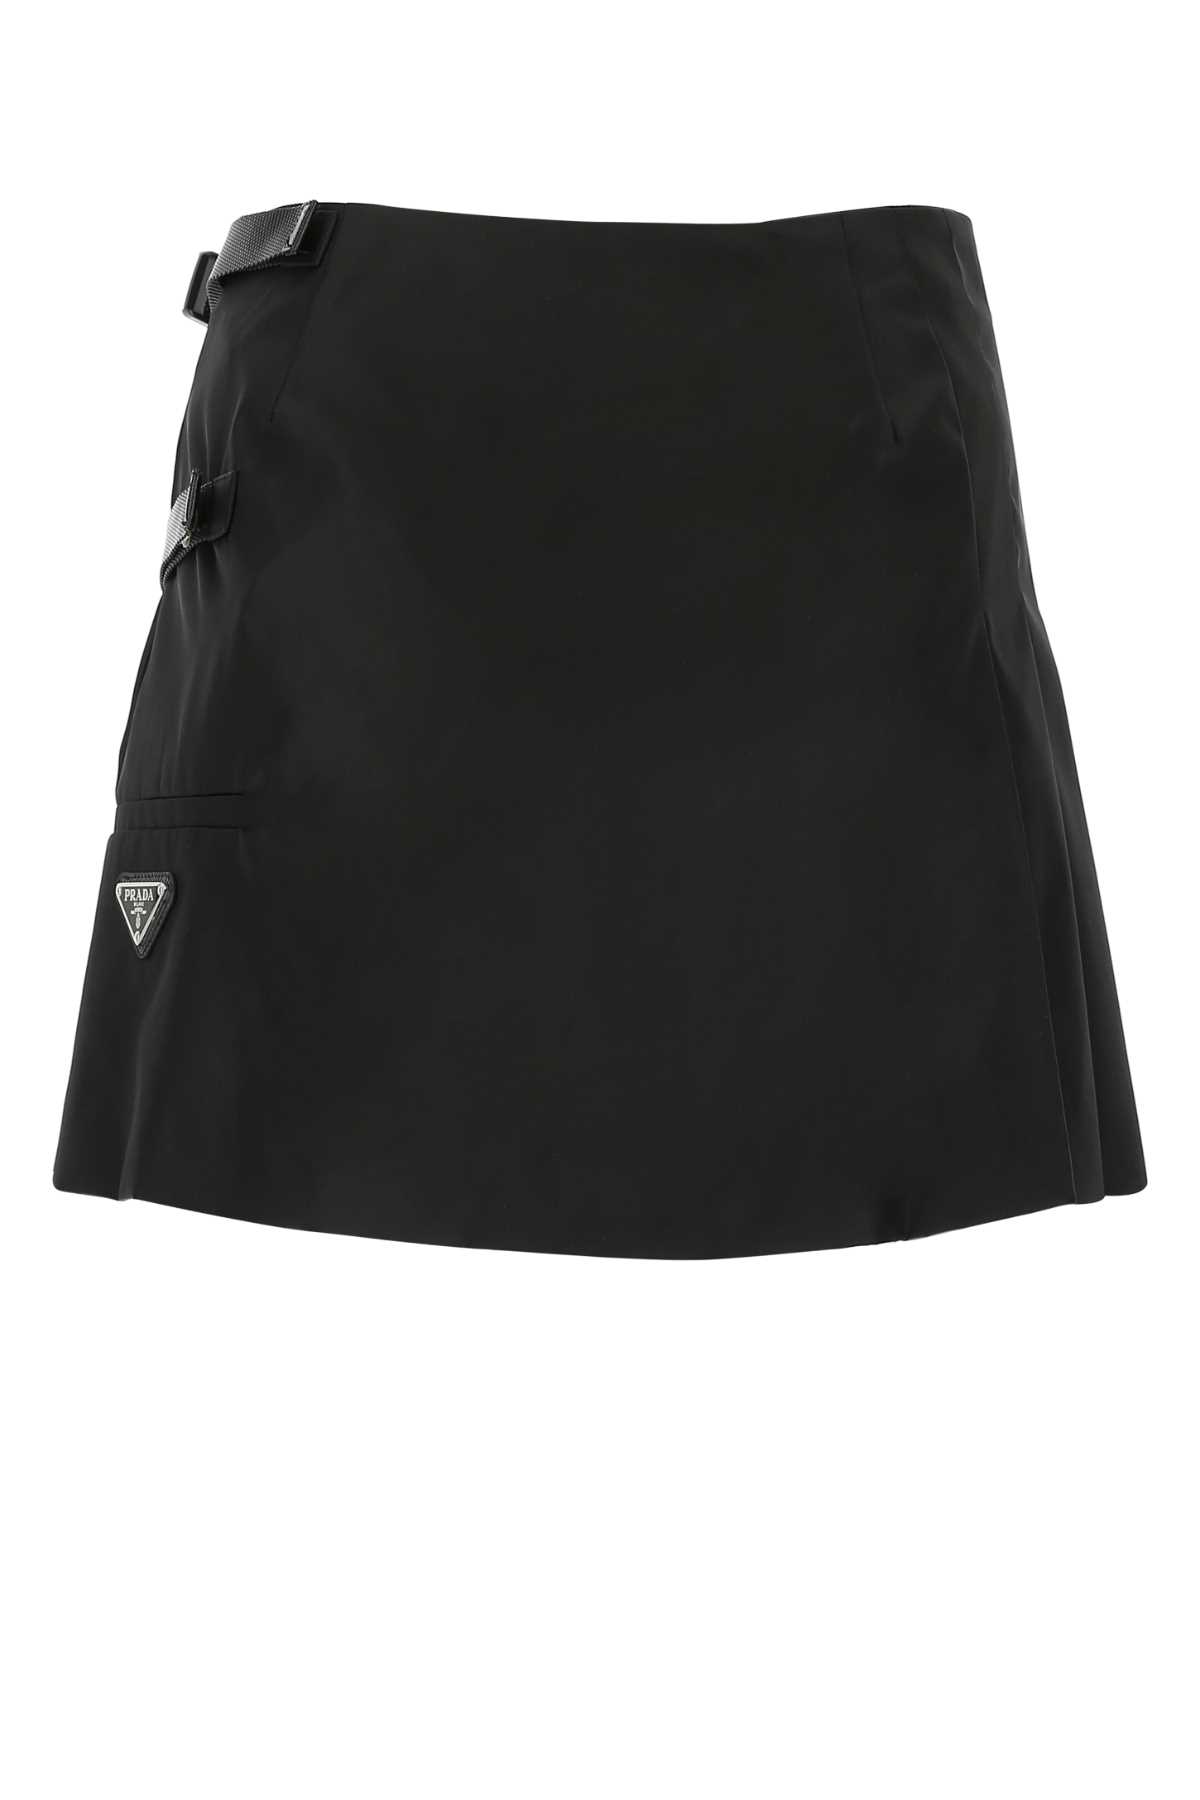 Prada Black Nylon Mini Skirt In F0002